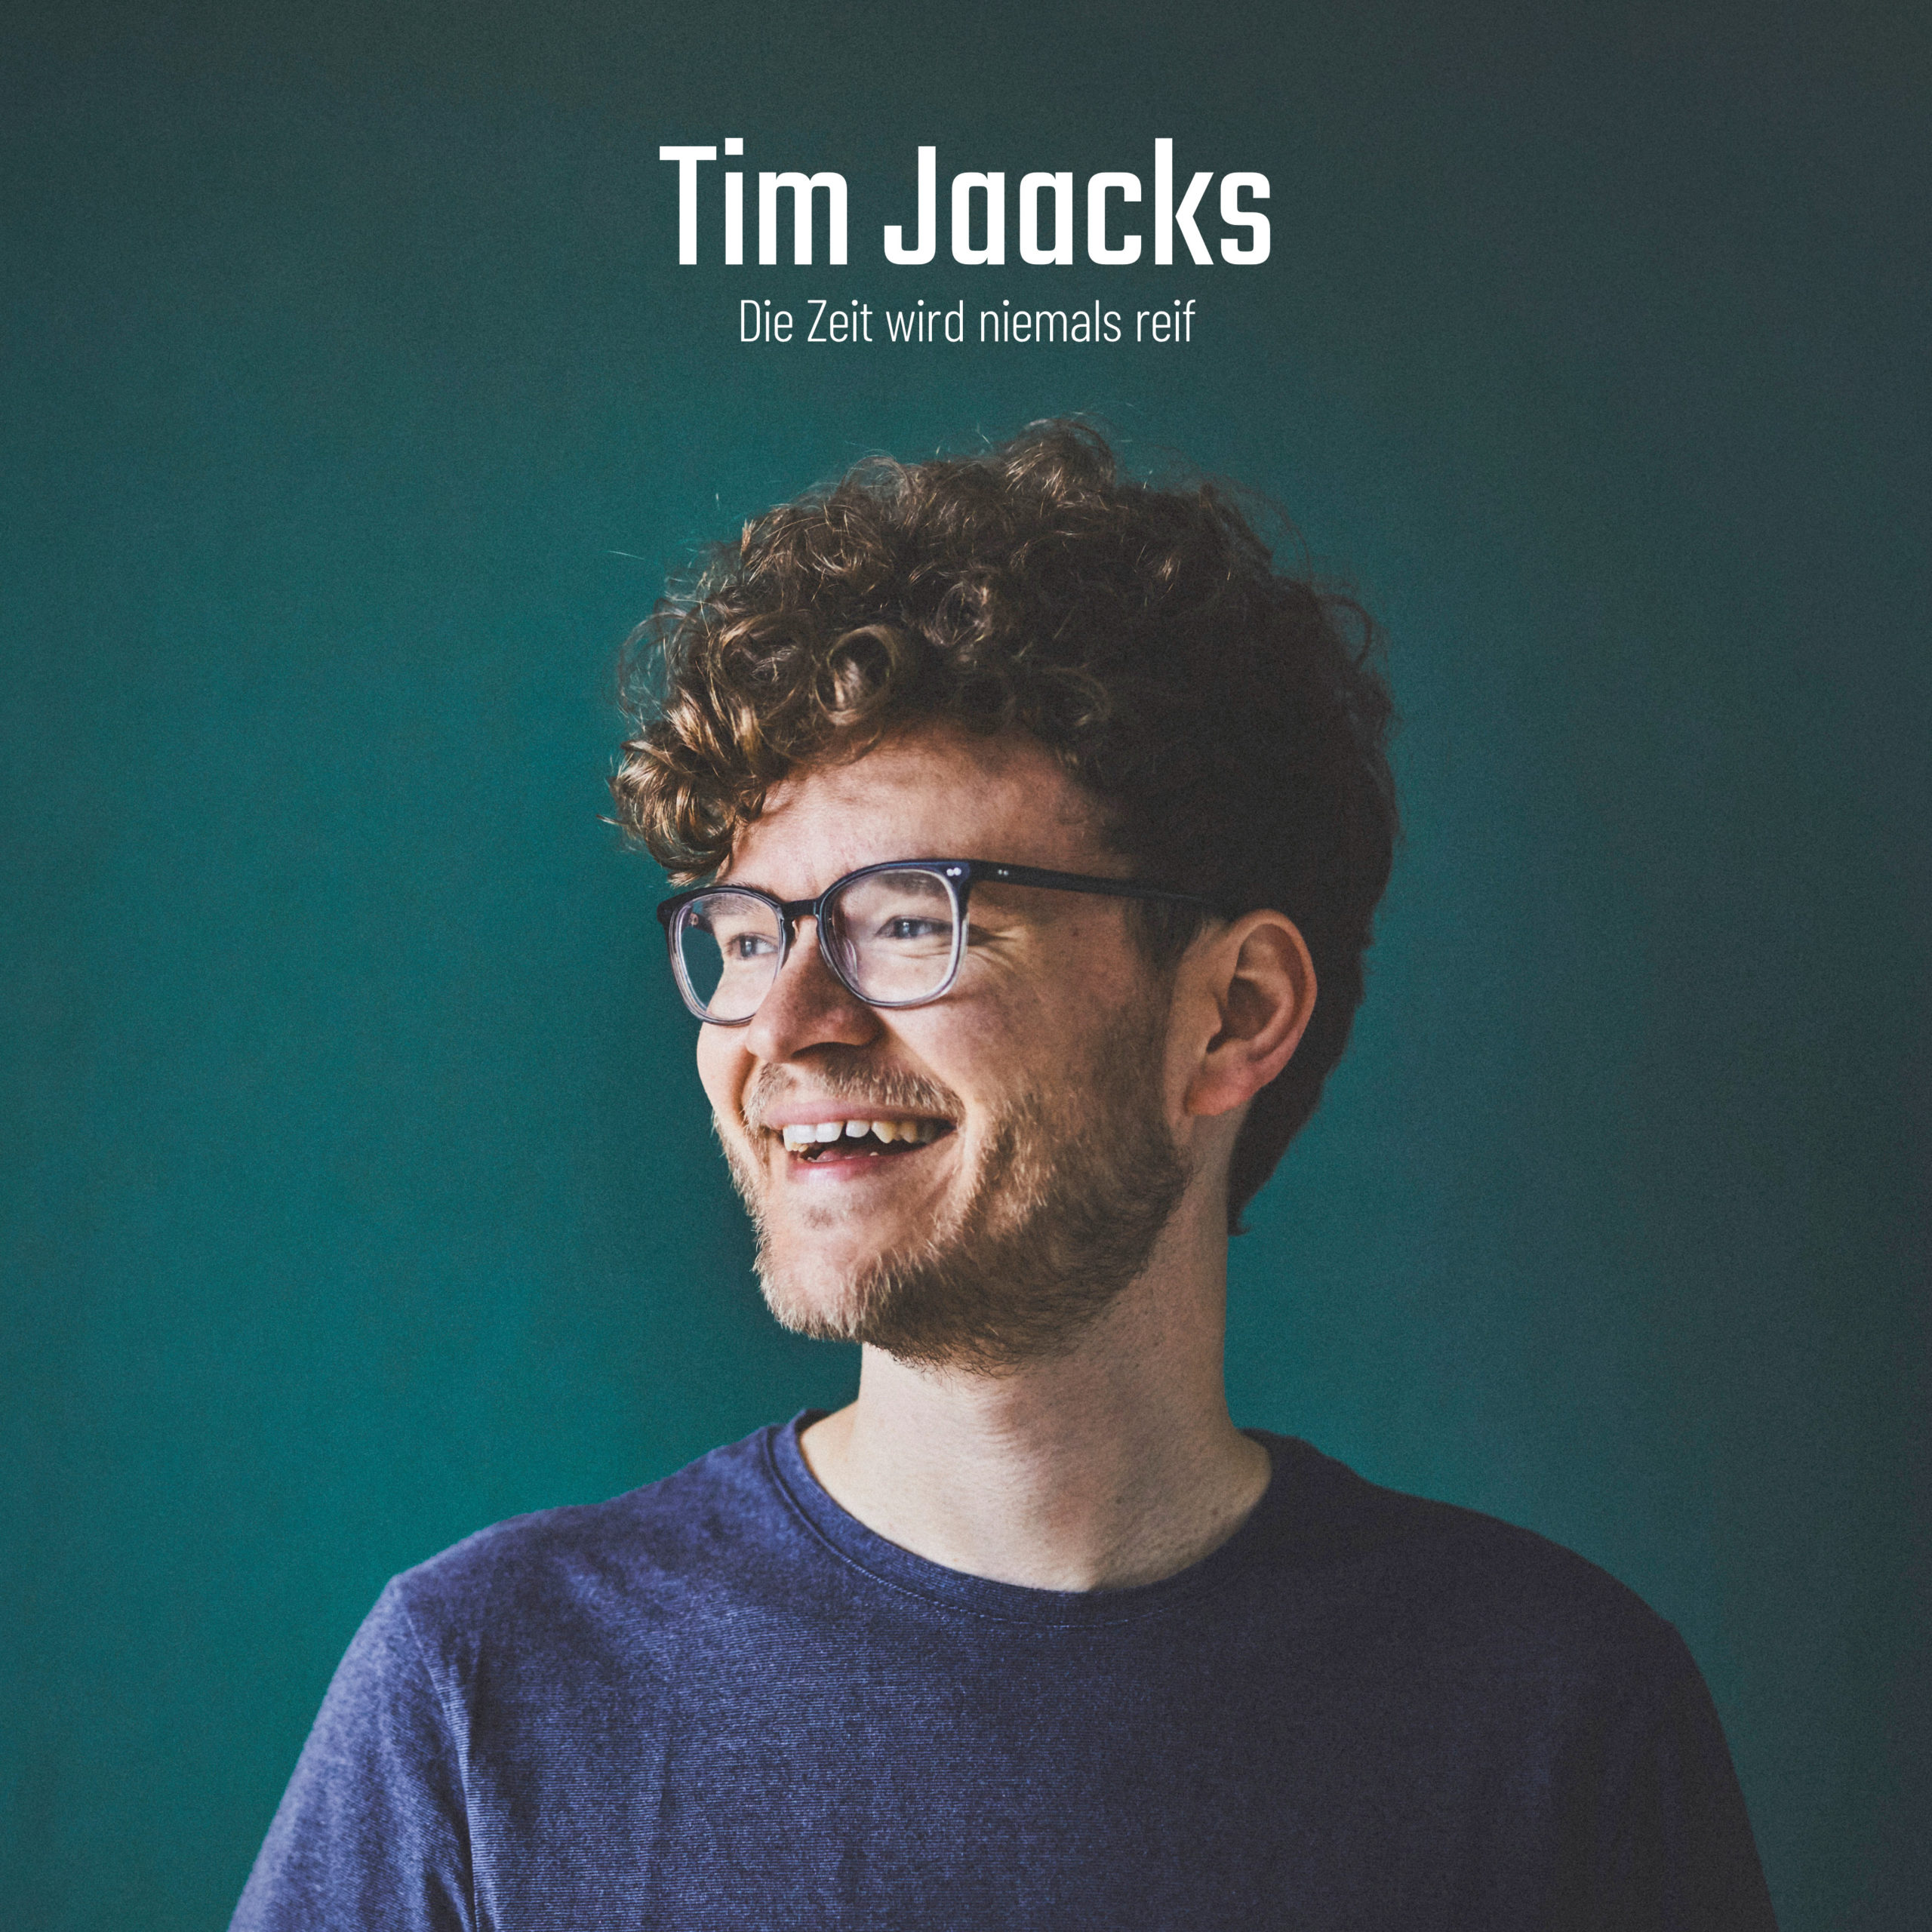 Tim Jaacks' Album erscheint bei Kombüse Schallerzeugnisse auf CD und Vinyl.